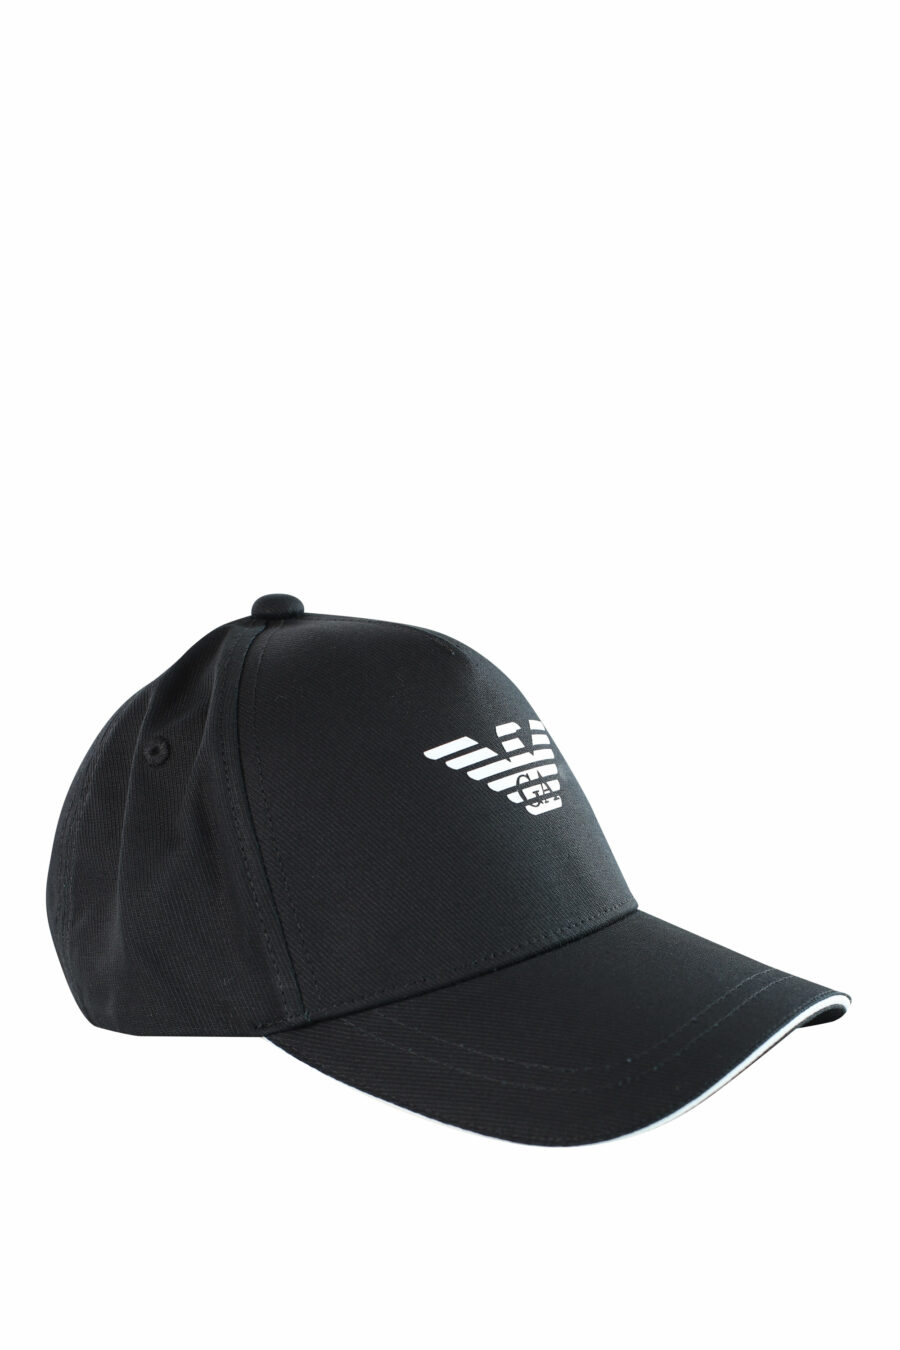 Schwarze Mütze mit weißem Adler-Logo - IMG 3718